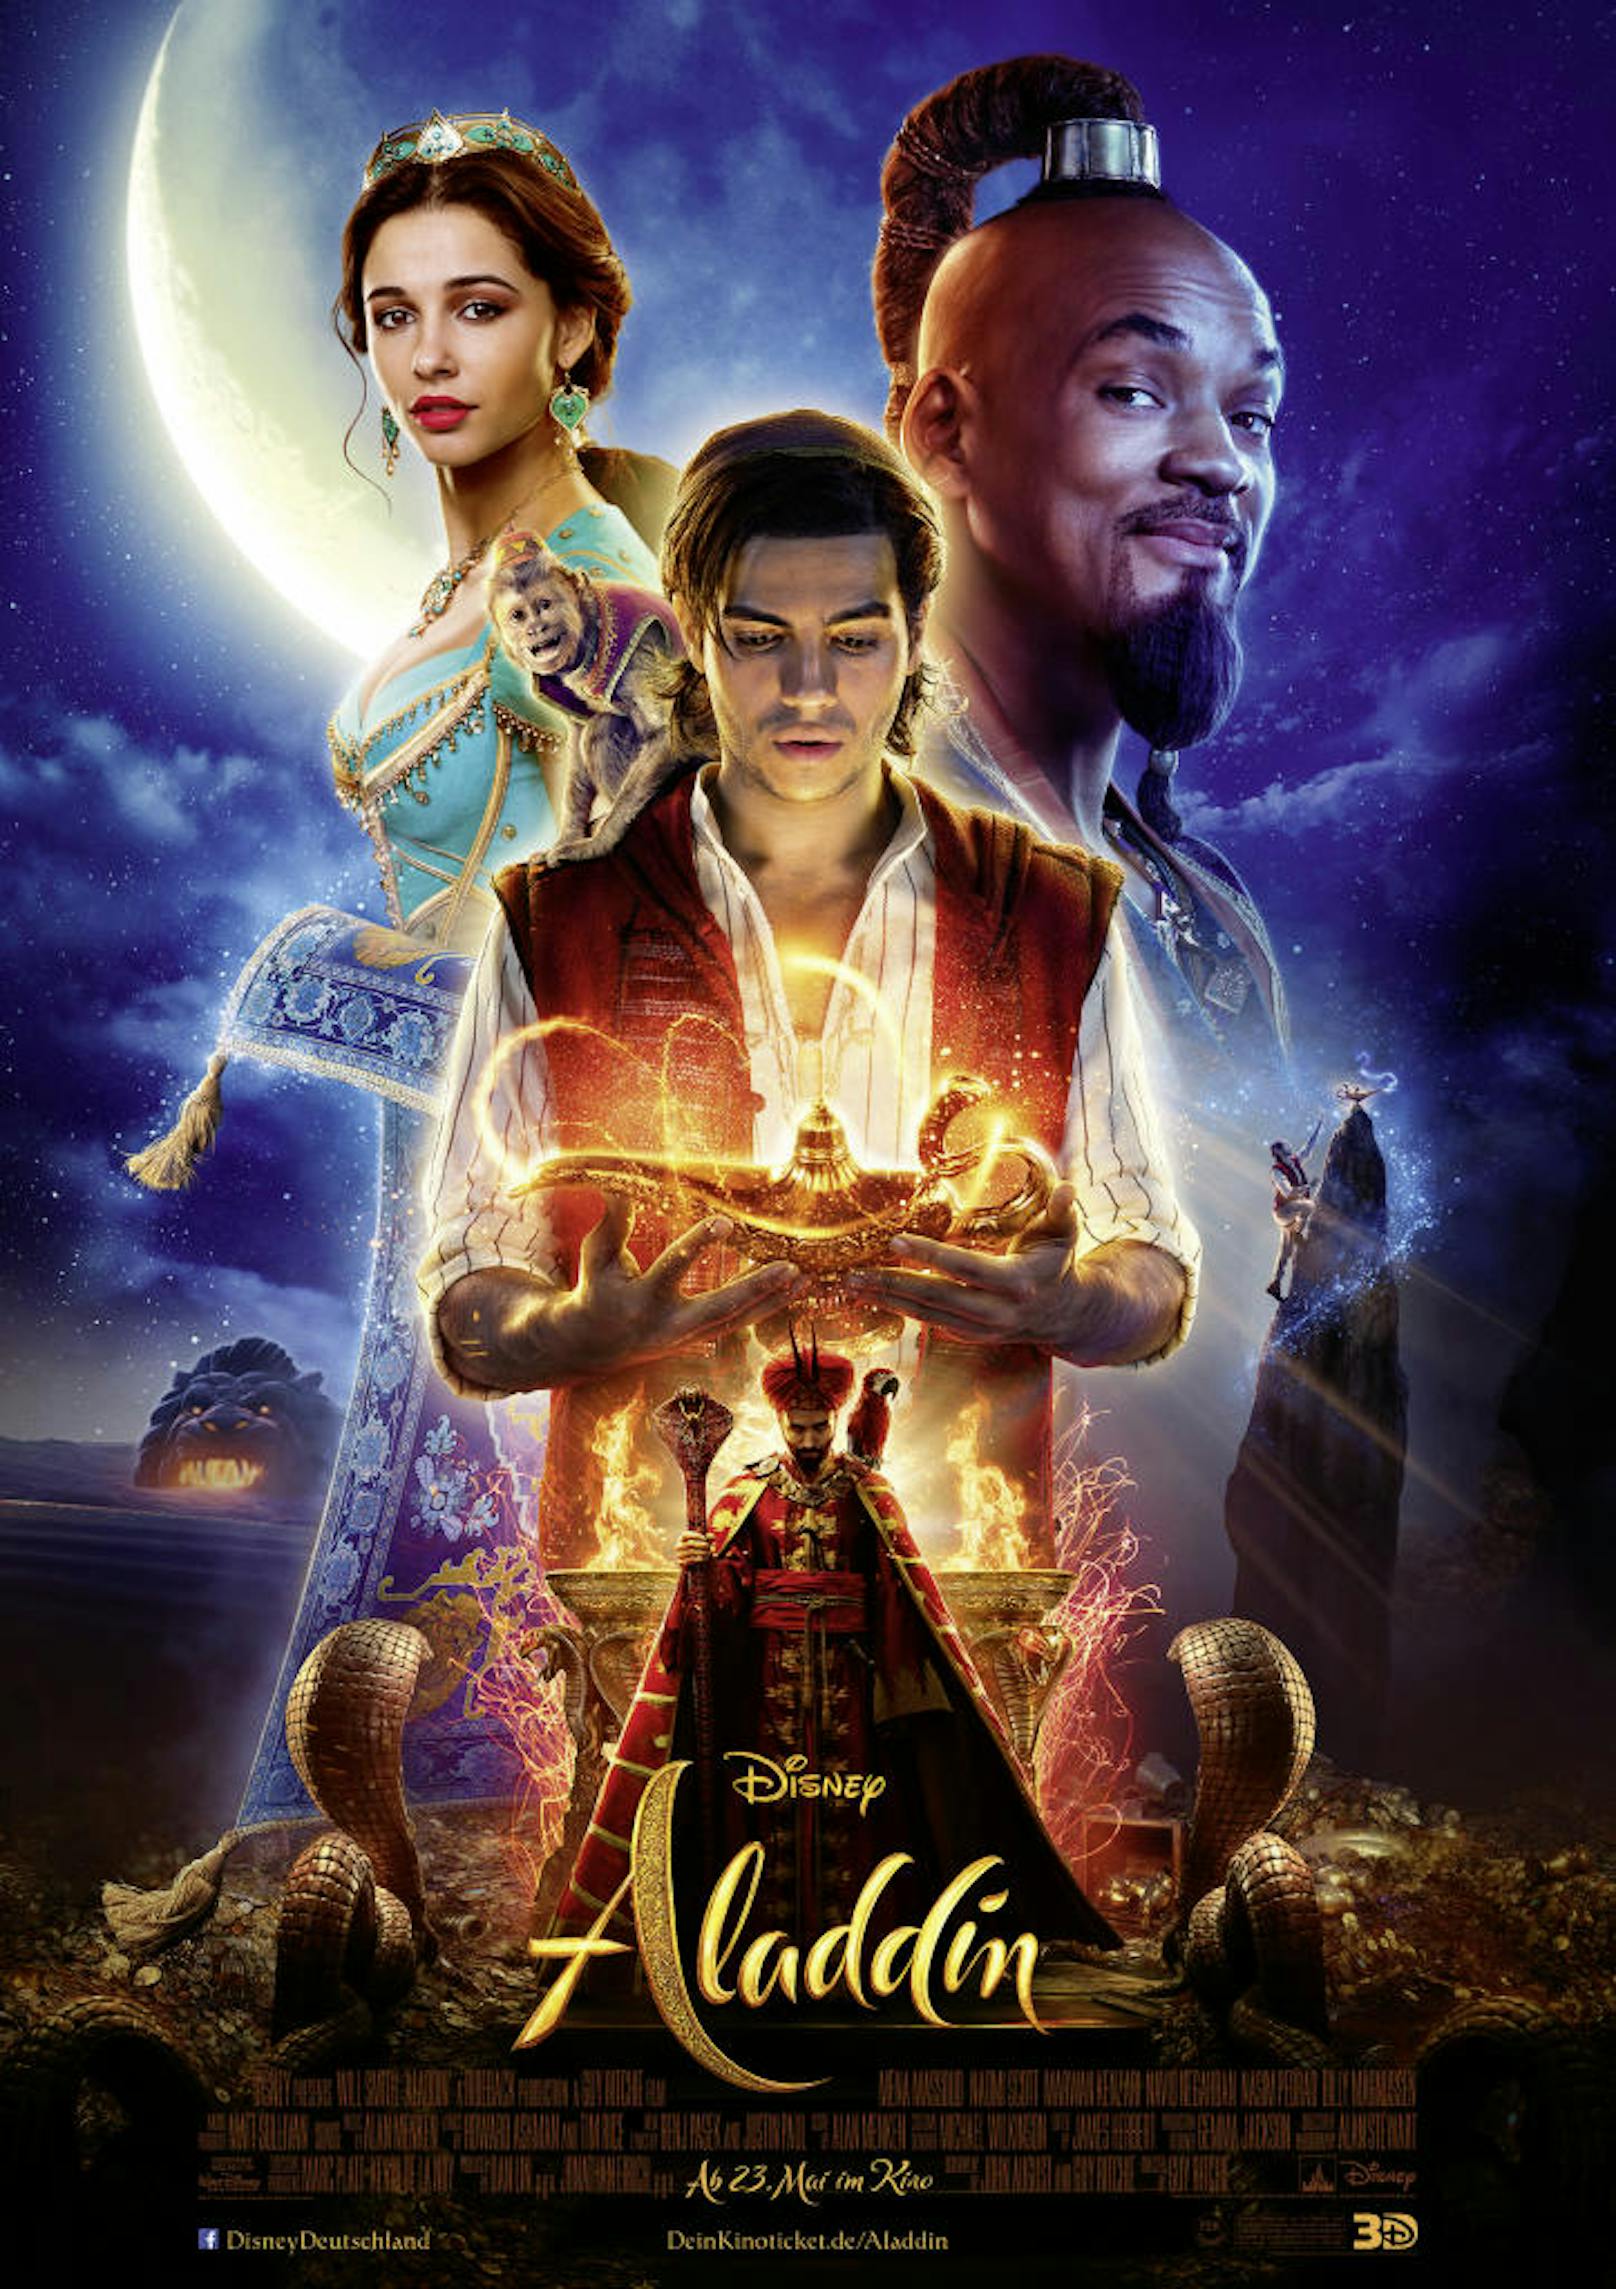 <b>Platz 6 - ALADDIN</b>
Weltweites Einspielergebnis: 1.050.693.953 Dollar

In Disneys "Aladdin"-Realverfilmung erfüllt Superstar Will Smith als Dschinni aus der Wunderlampe die Wünsche des Straßenjungen und Taschendiebes Aladdin (Mena Massoud). <a href="https://www.heute.at/s/aladdin-disney-kino-filmkritik-review-will-smith-naomi-scott-mena-massoud-53508006">Hier geht's zur Aladddin-Review</a>